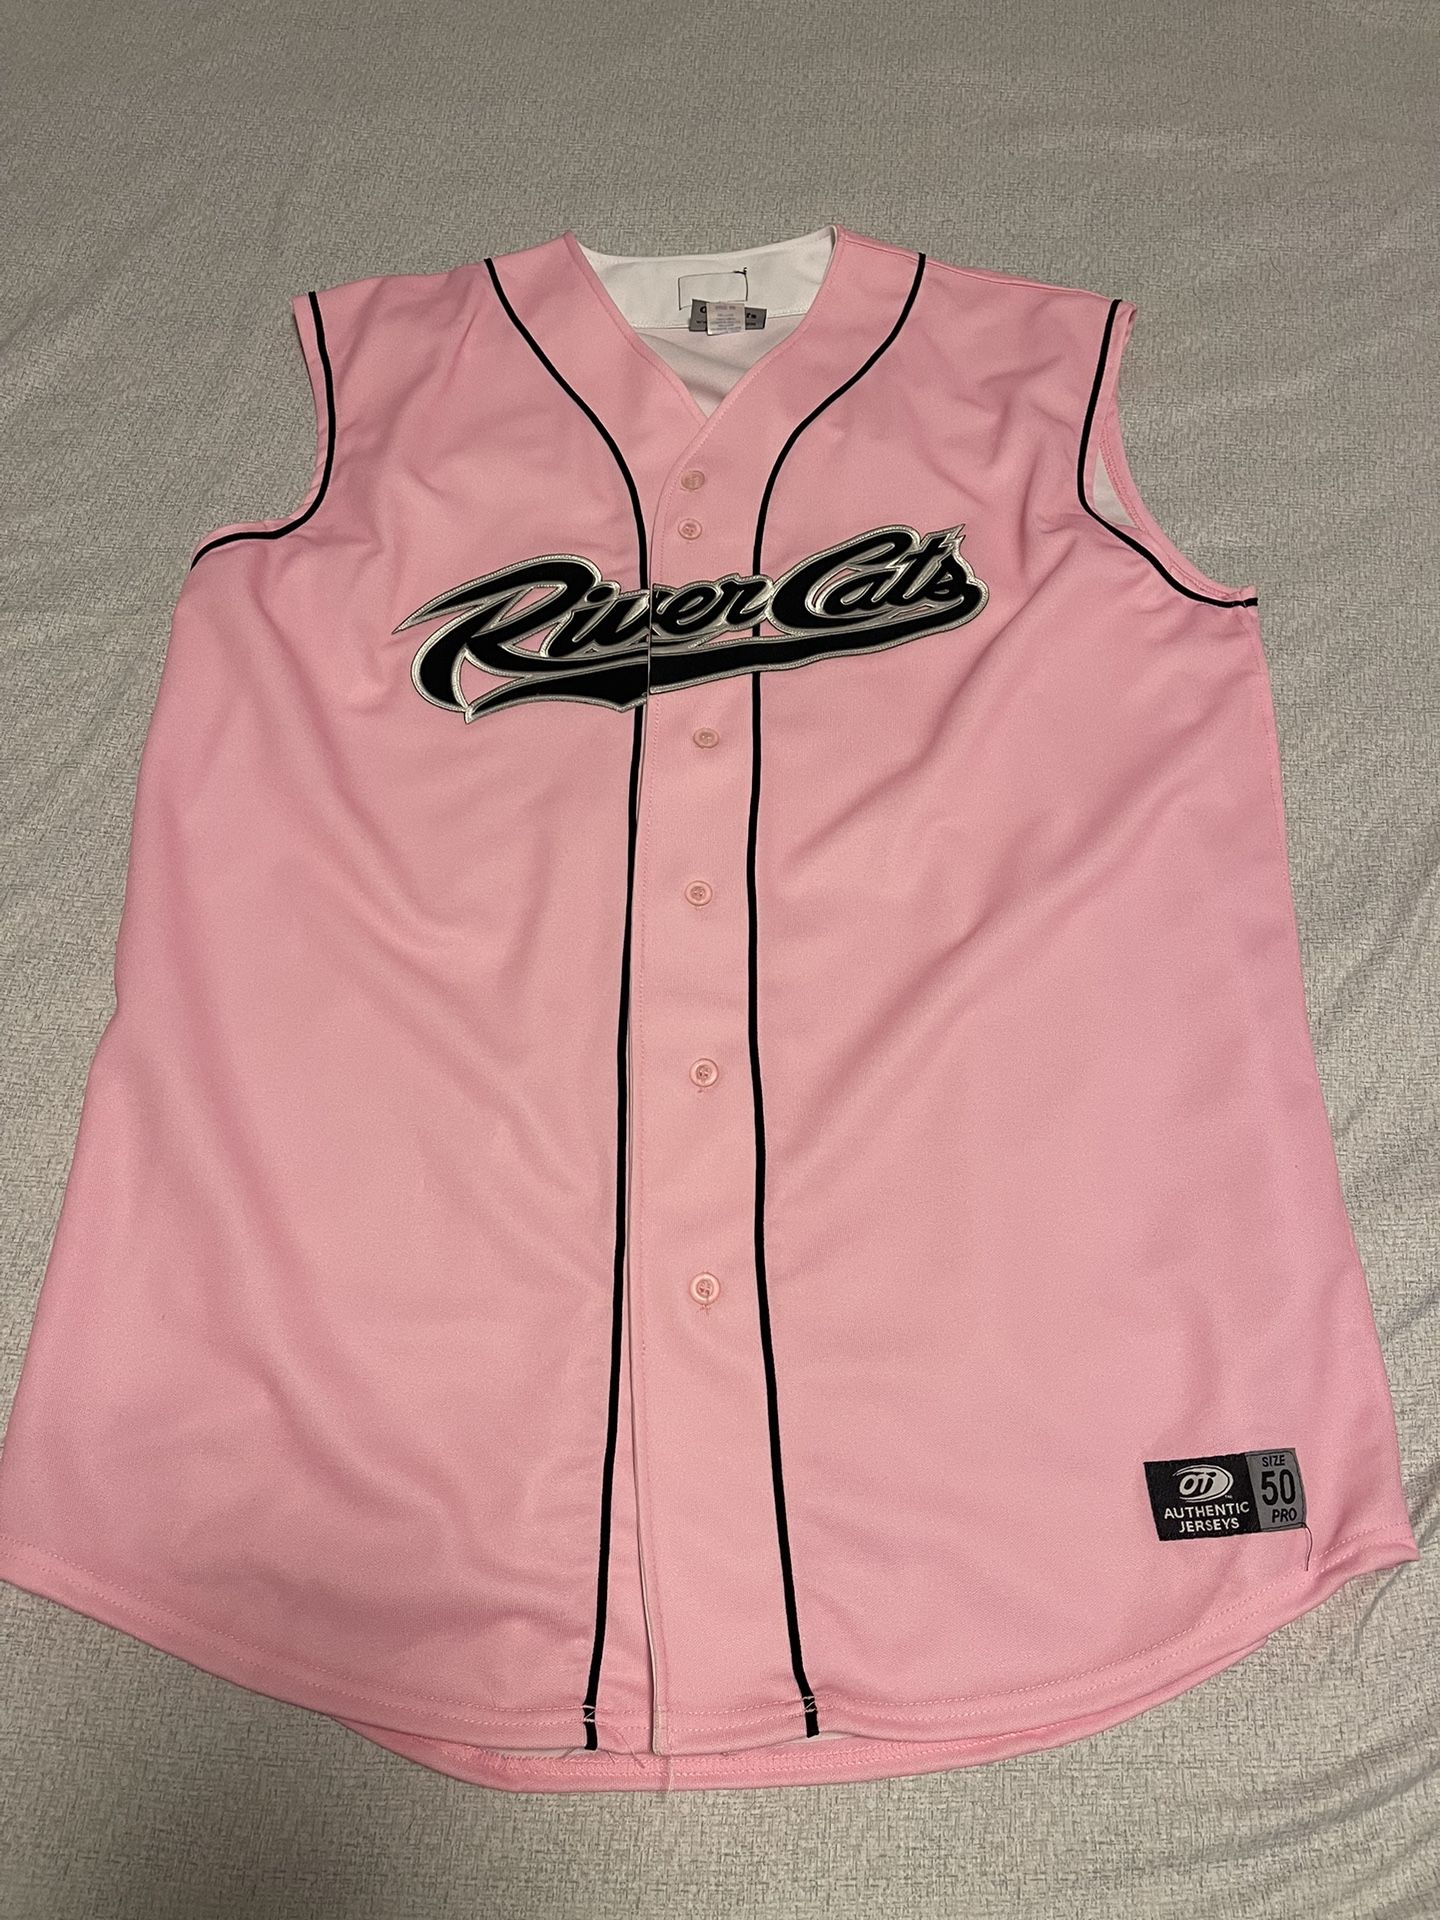 Sacramento River Cats Size 50 Pink Baseball Jersey #8 OT Sports Vintage